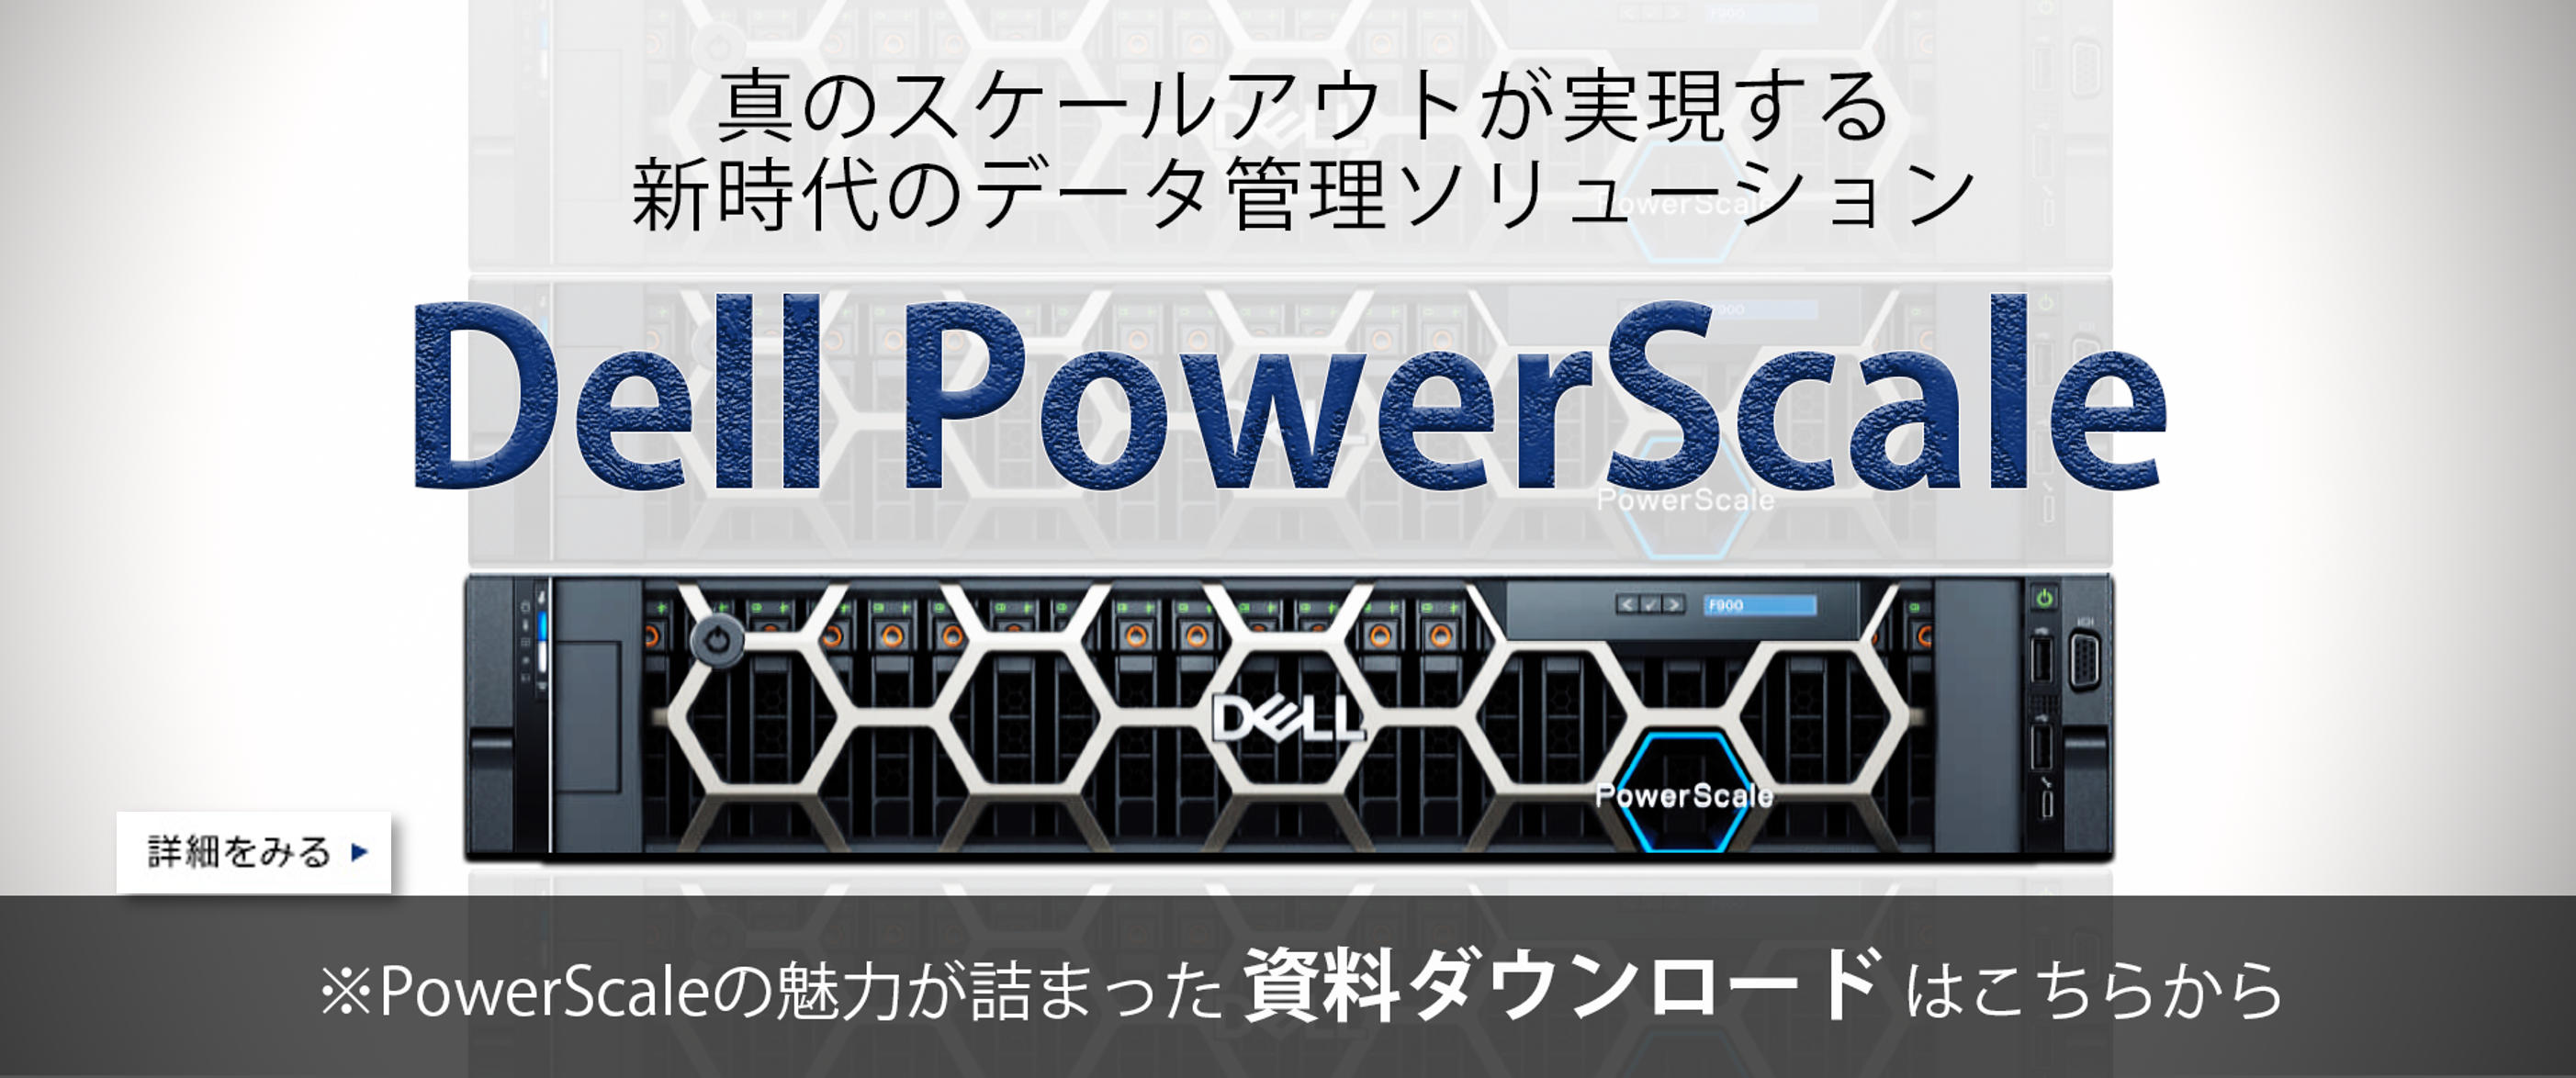 真のスケールアウトが実現する、新時代のデータ管理ソリューション「Dell PowerScale」